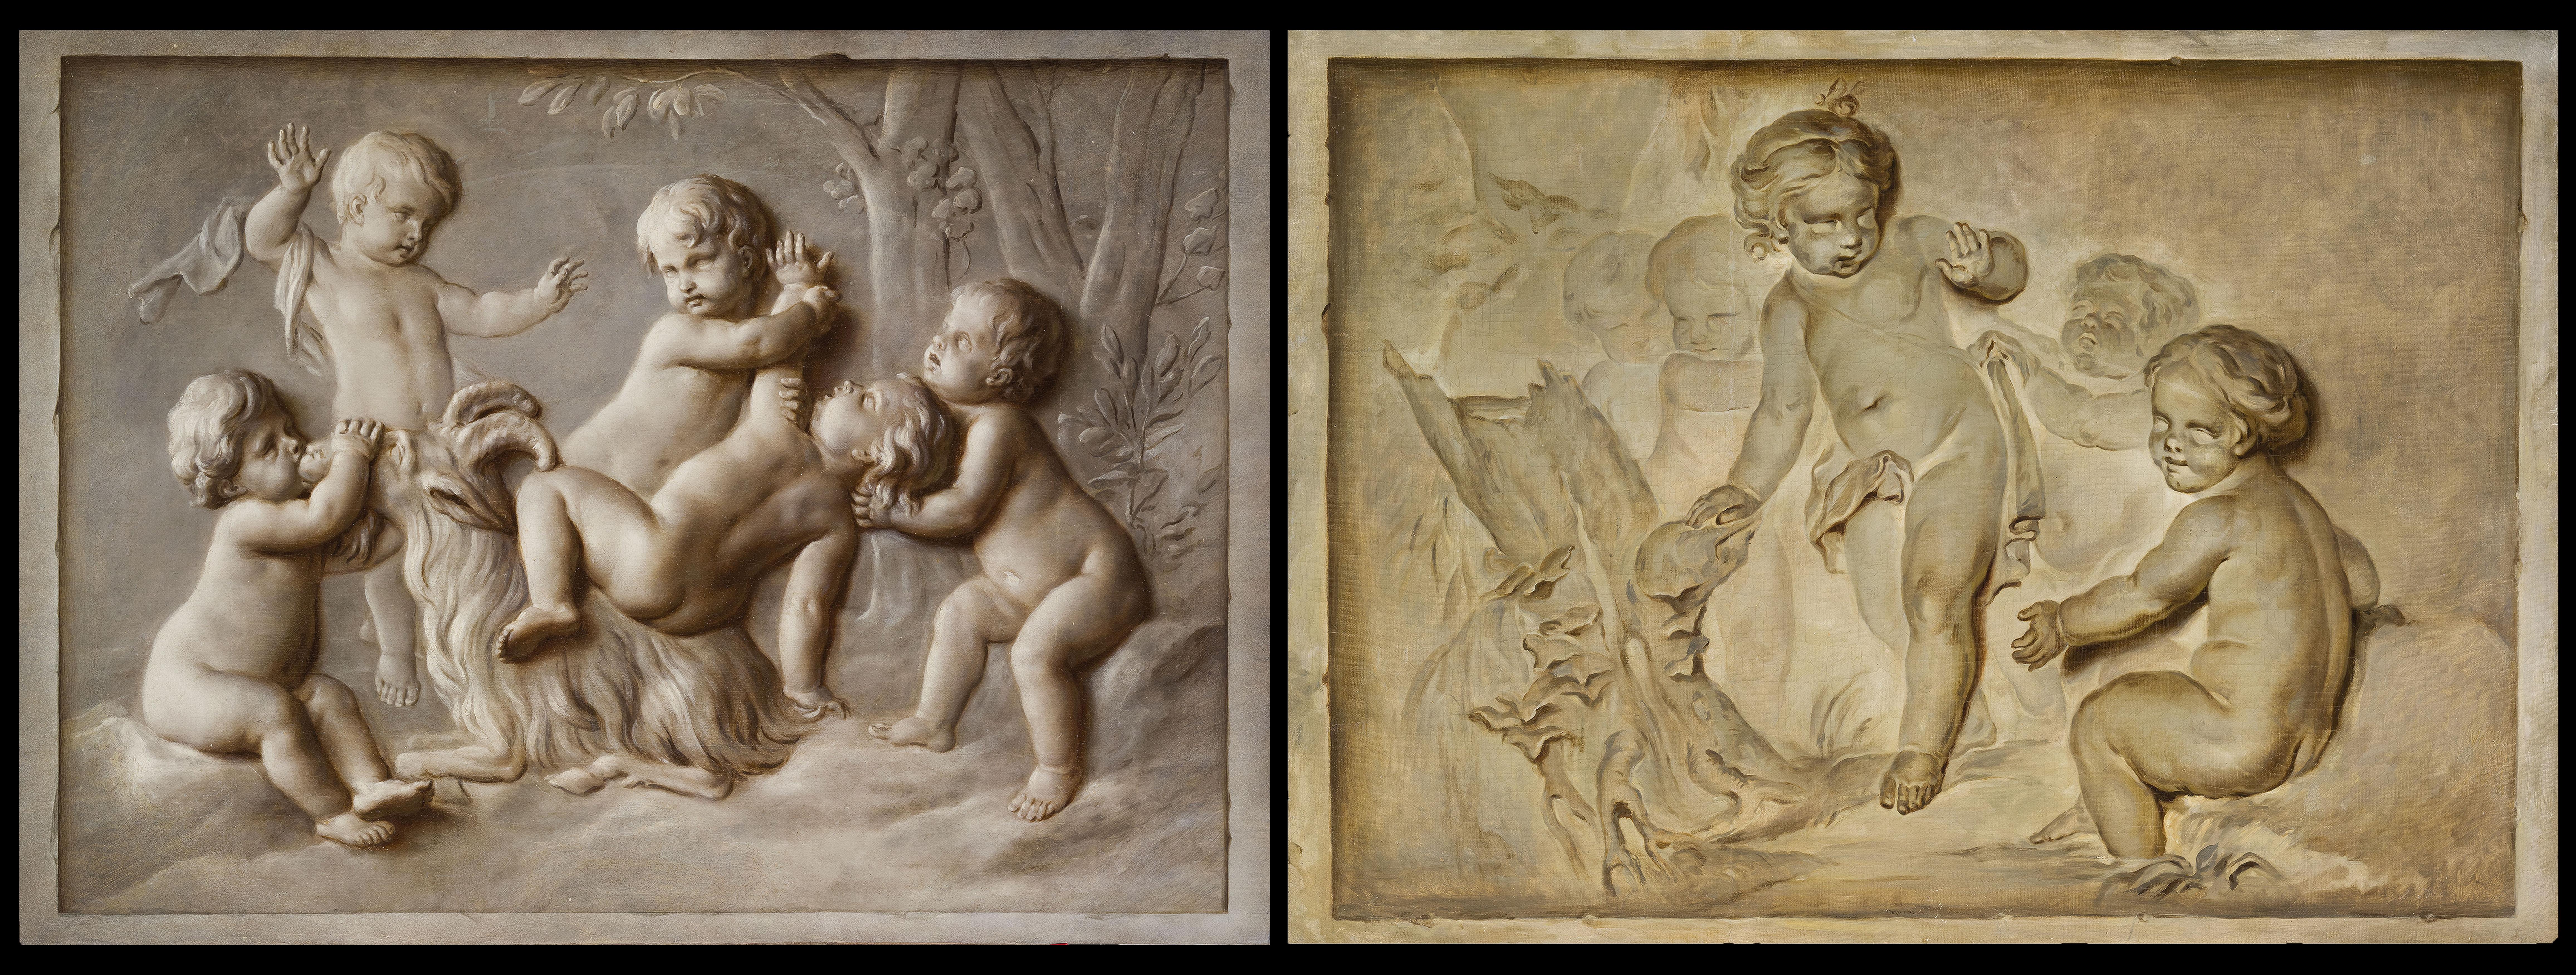 xVIIIe siècle, paire de peintures françaises Louis XVI à l'huile sur toile avec trompe l'œil, attribuables à Piat Joseph Sauvage (Tournai, 1744-1818)

Taille : cm H 94 x L 132 chacun

La paire de peintures à l'huile sur toile représente un